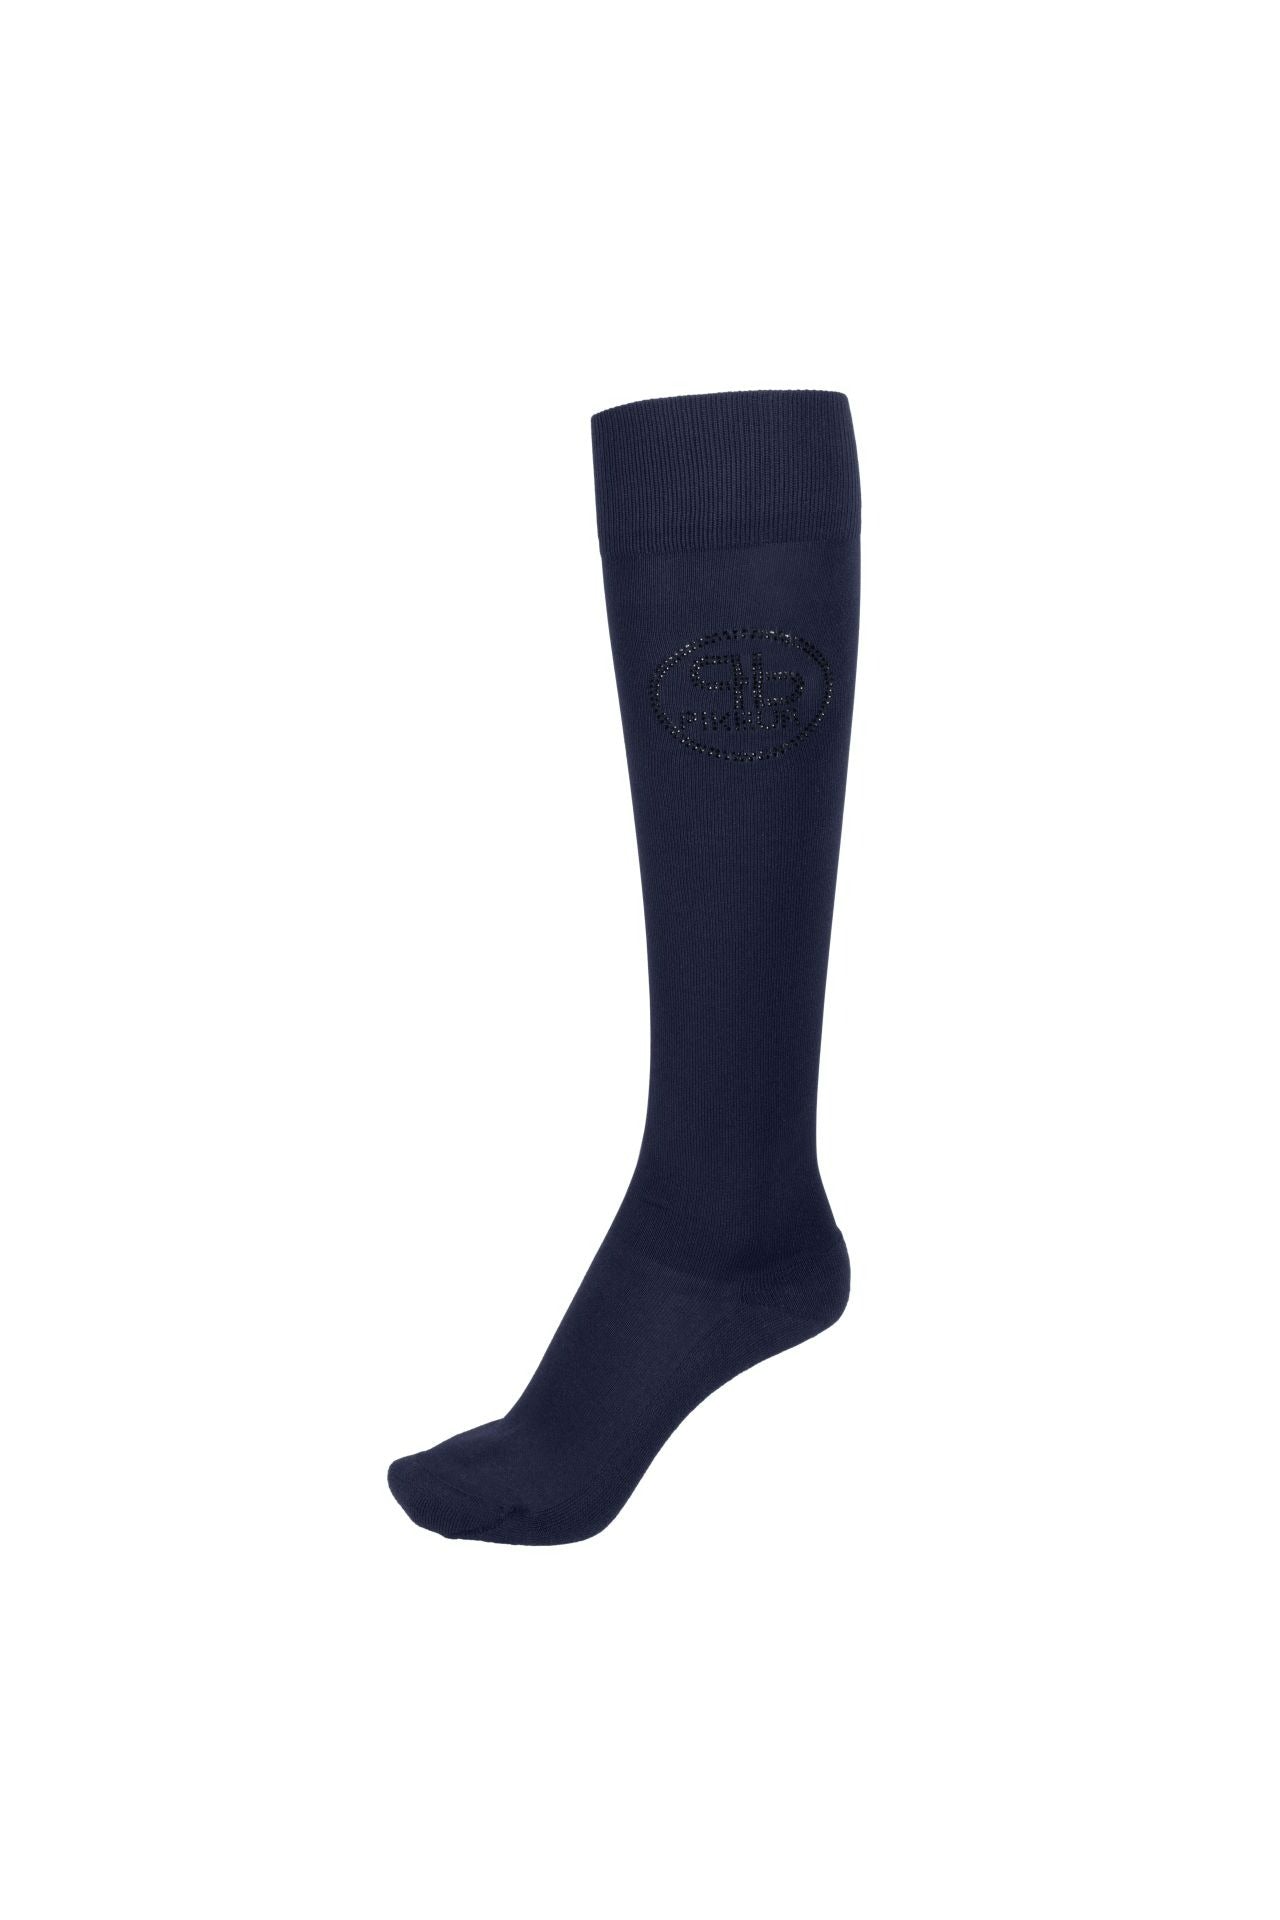 Pikeur Socks 4732 Selection